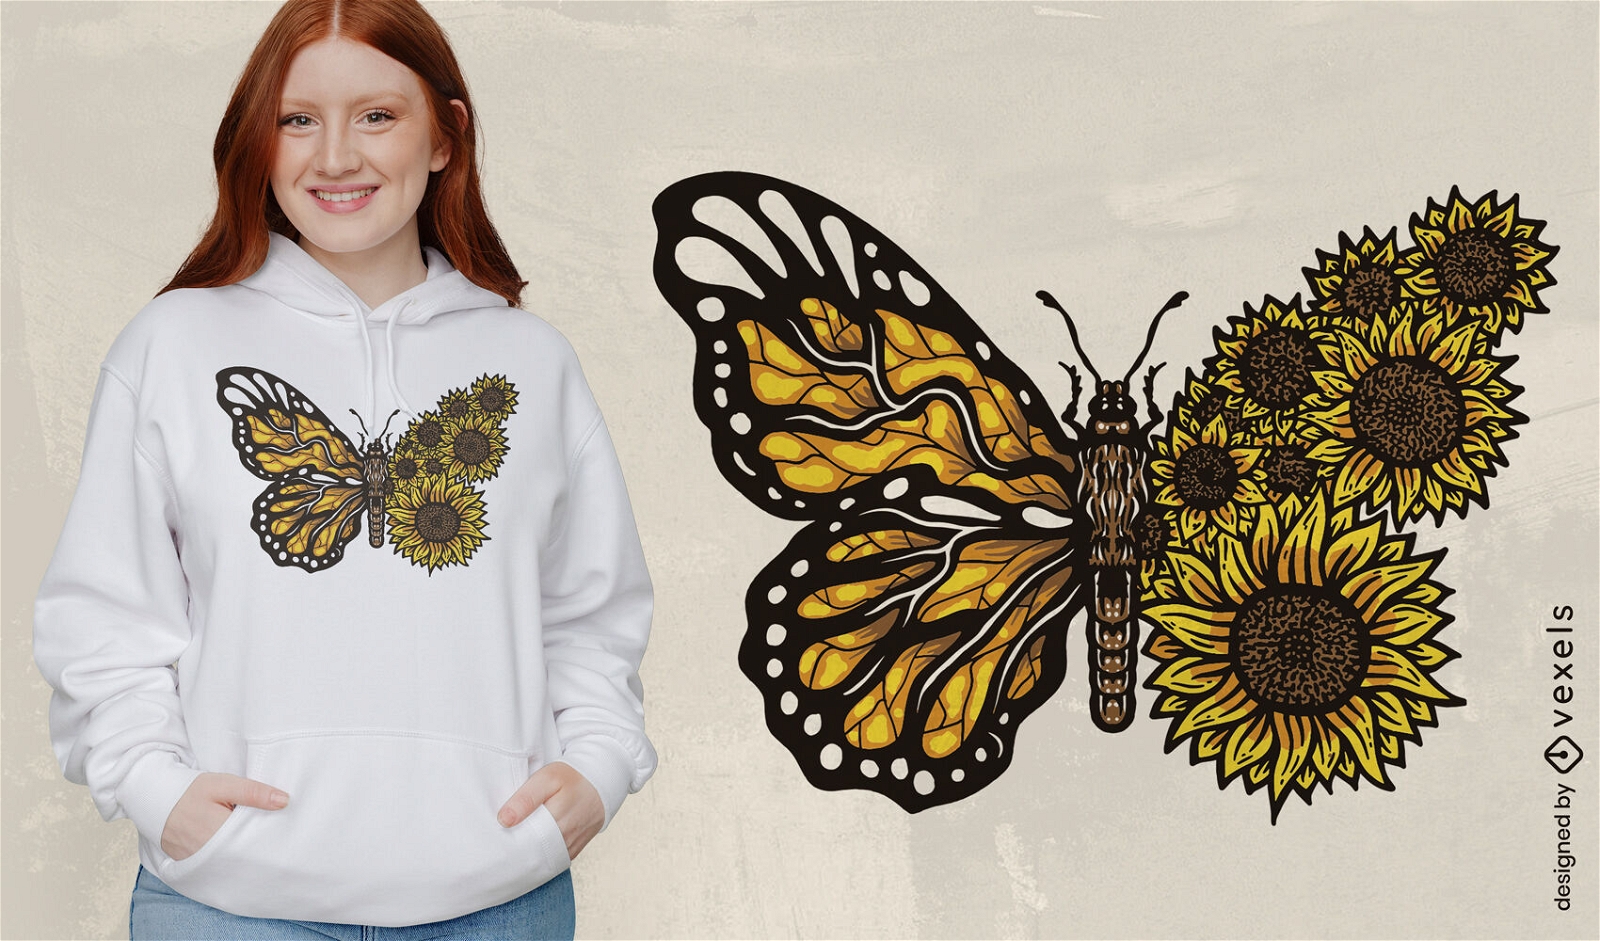 Sunflower monarch butterfly t-shirt design